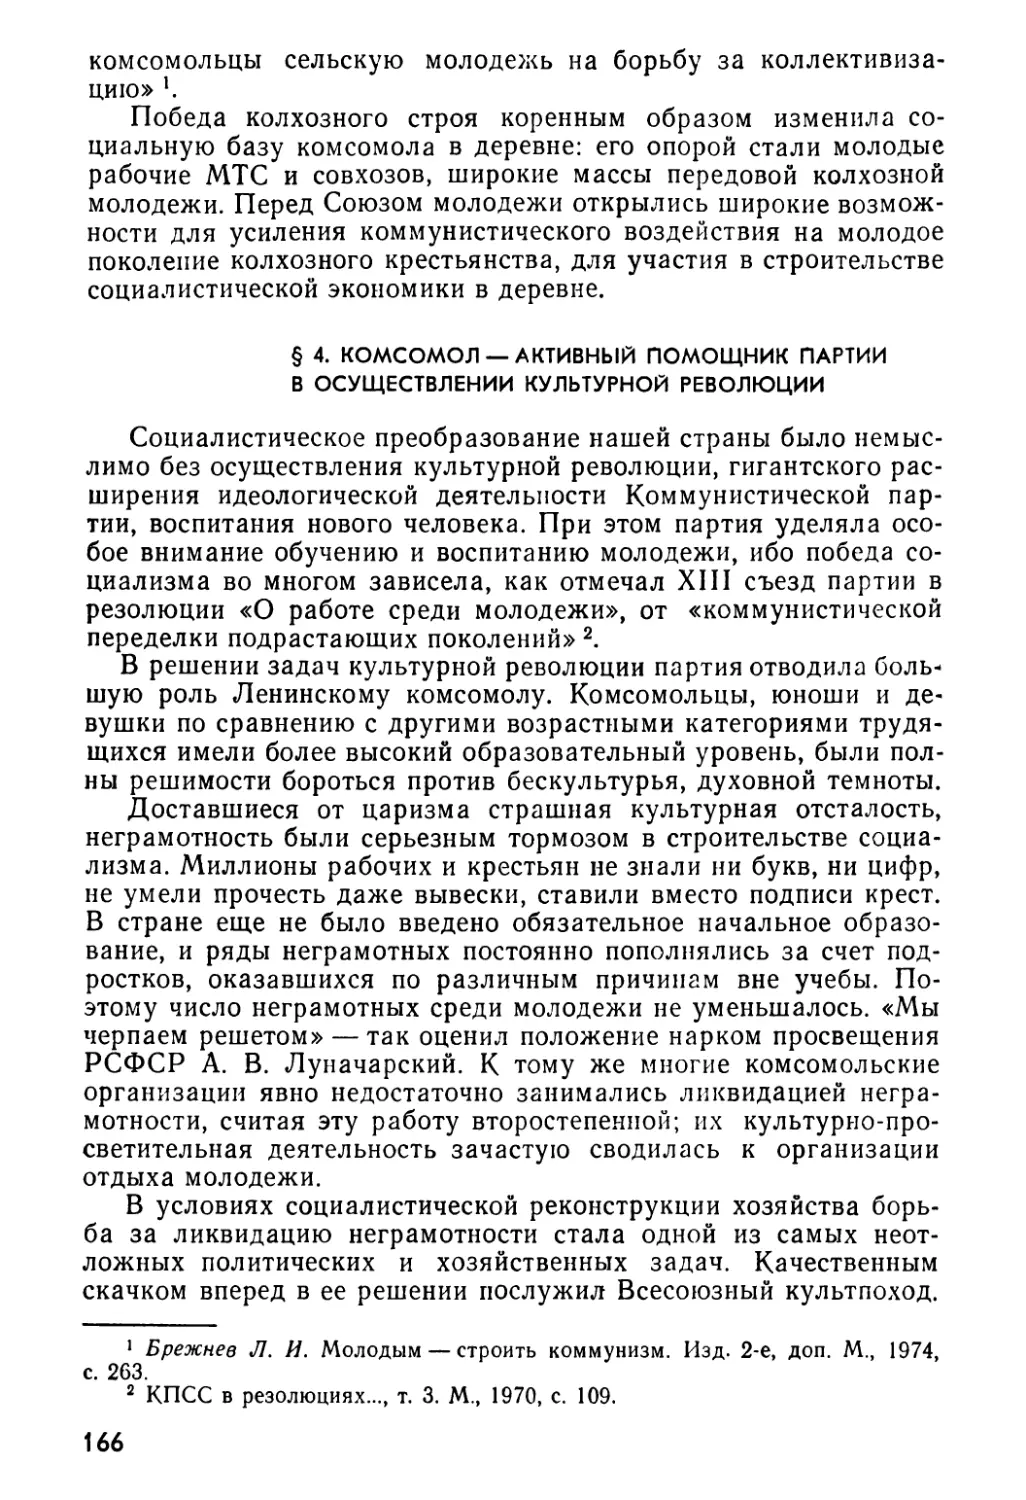 § 4. Комсомол — активный помощник партии в осуществлении культурной революции